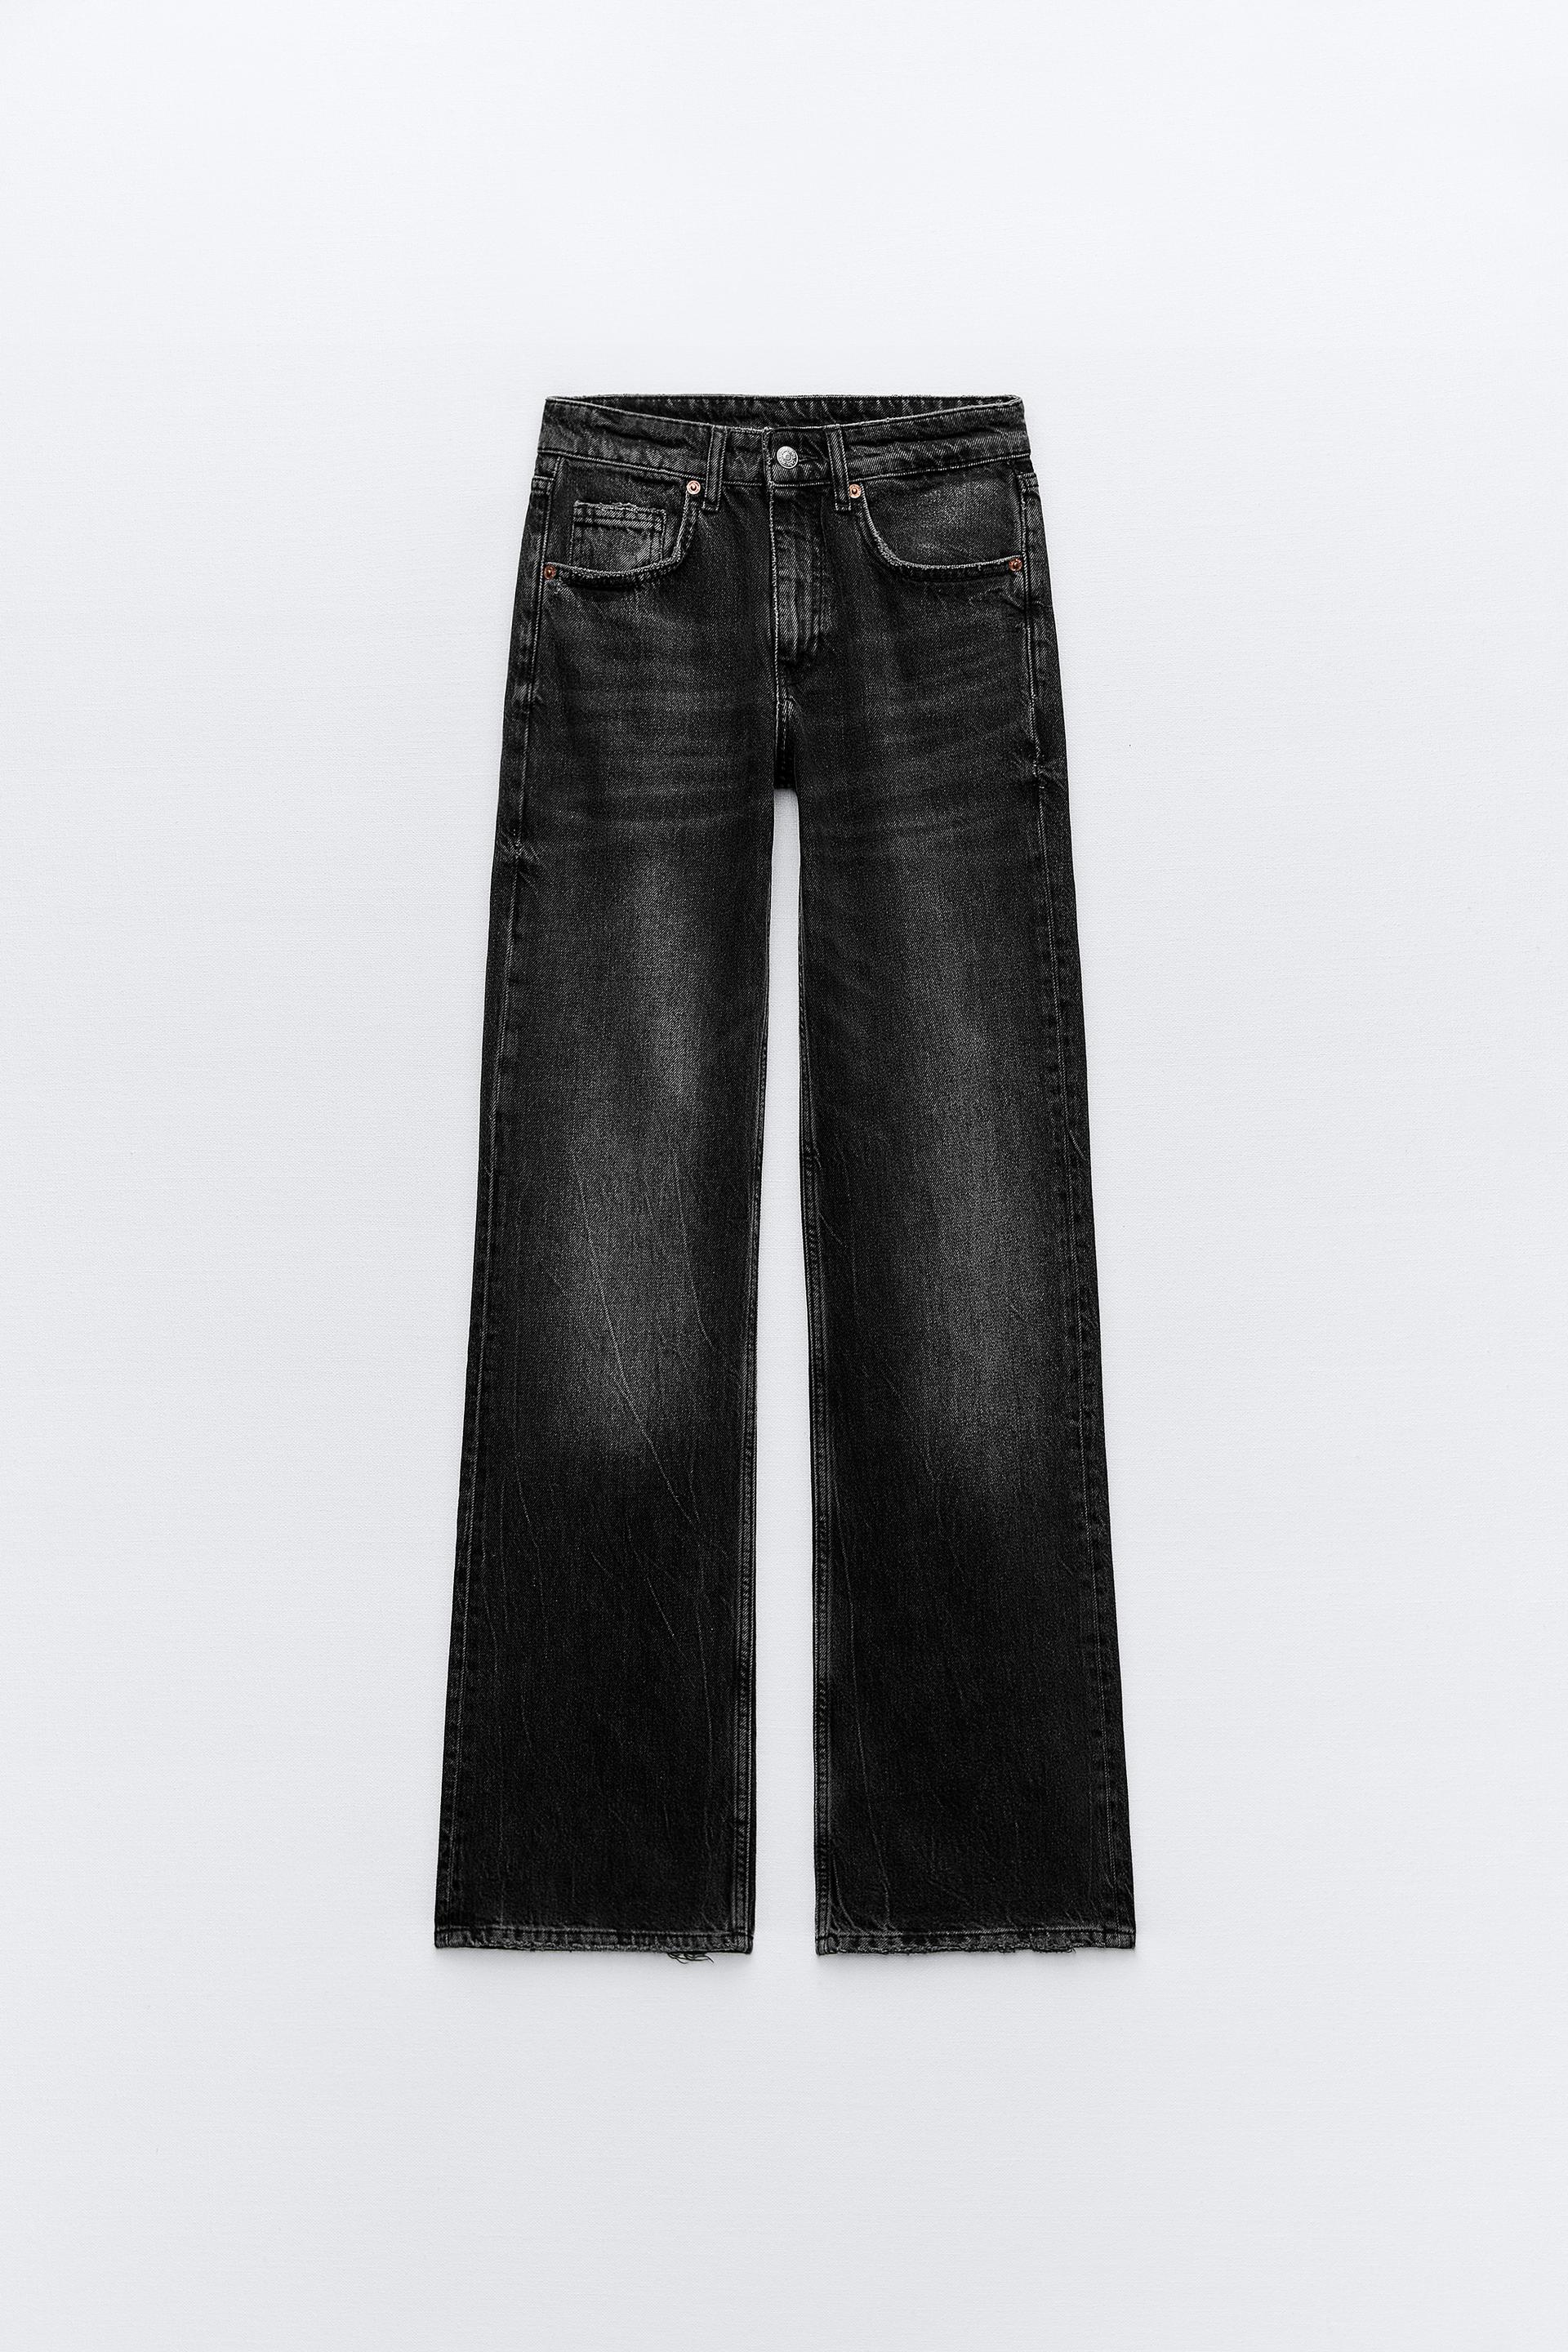 Джинсы Zara Trf Wide-leg Full Length, черный джинсы zara trf wide leg full length светло серый